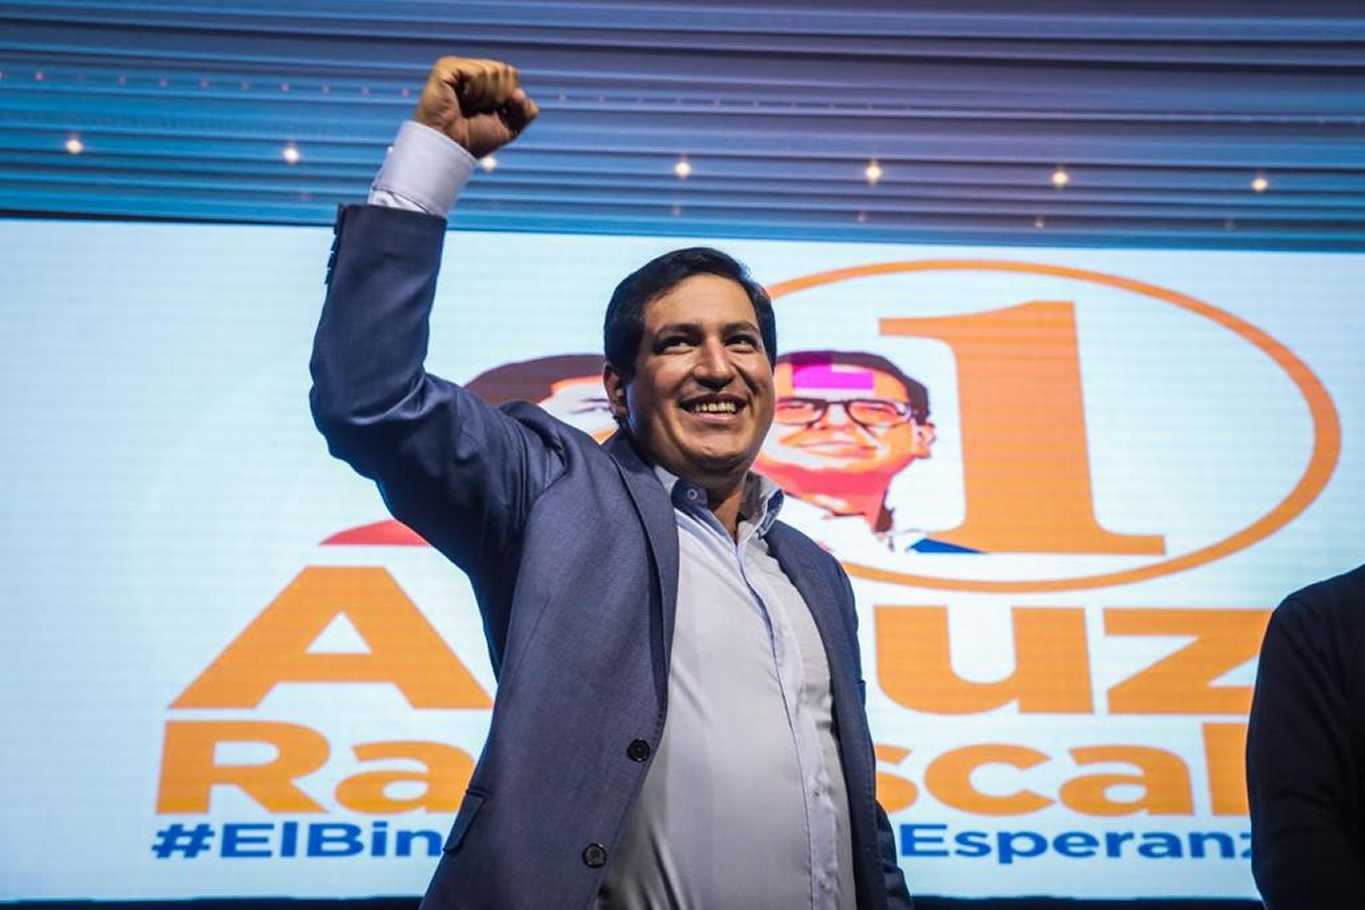  El candidato presidencial del correísmo Andrés Arauz. Foto: Télam 